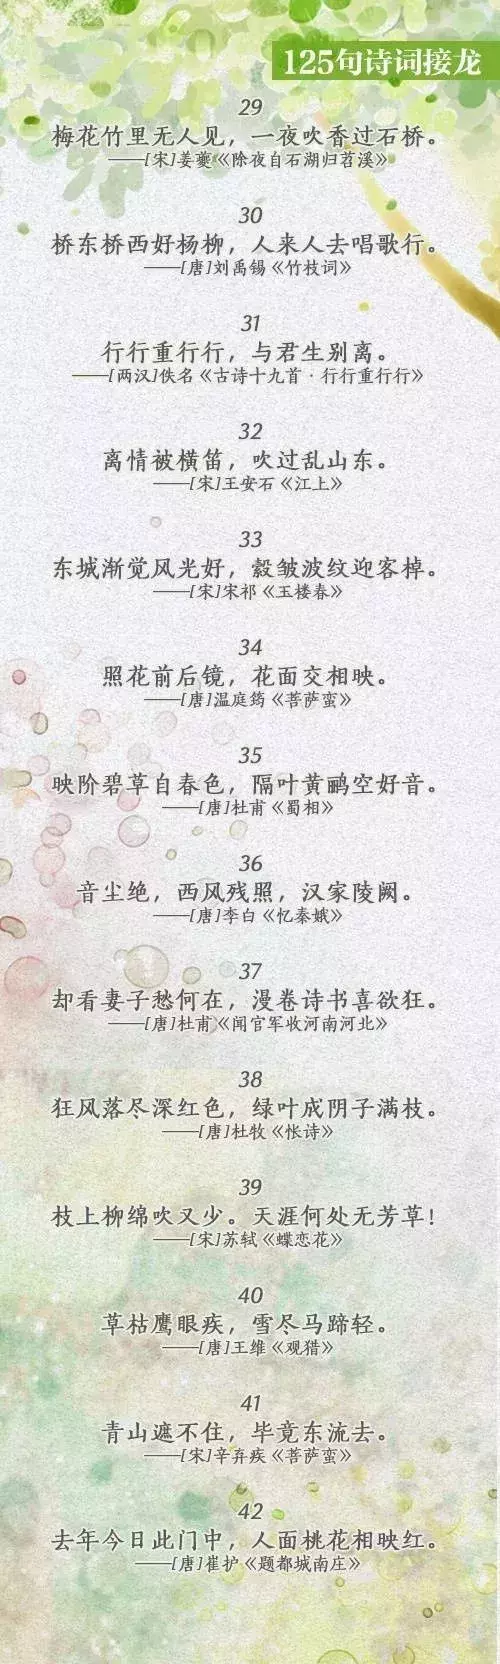 中国诗词大会丨趣味诗词接龙125句！一边玩接龙，一边品诗词